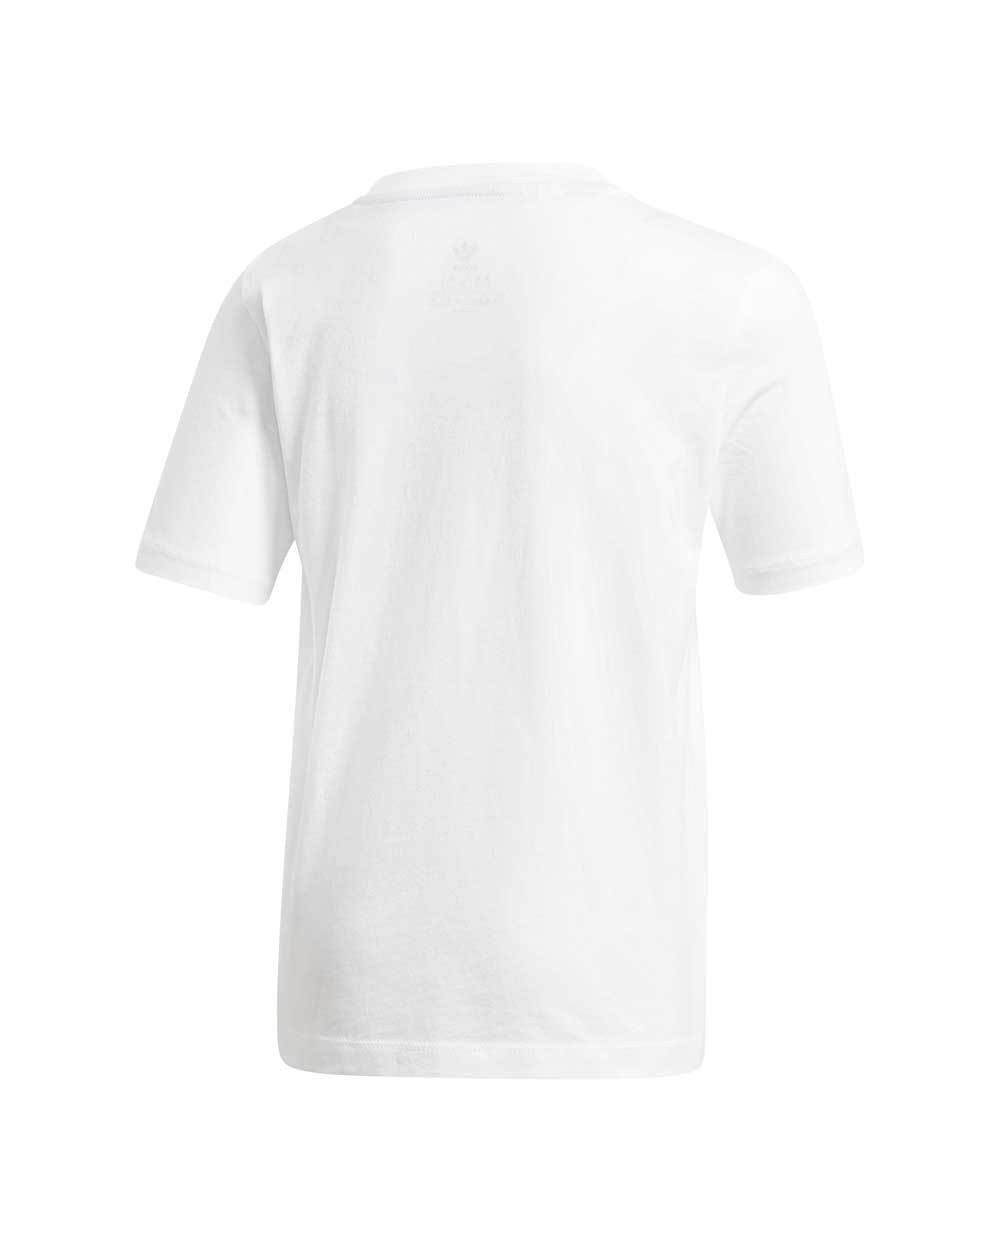 Adidas Culture Clash T-Shirt White